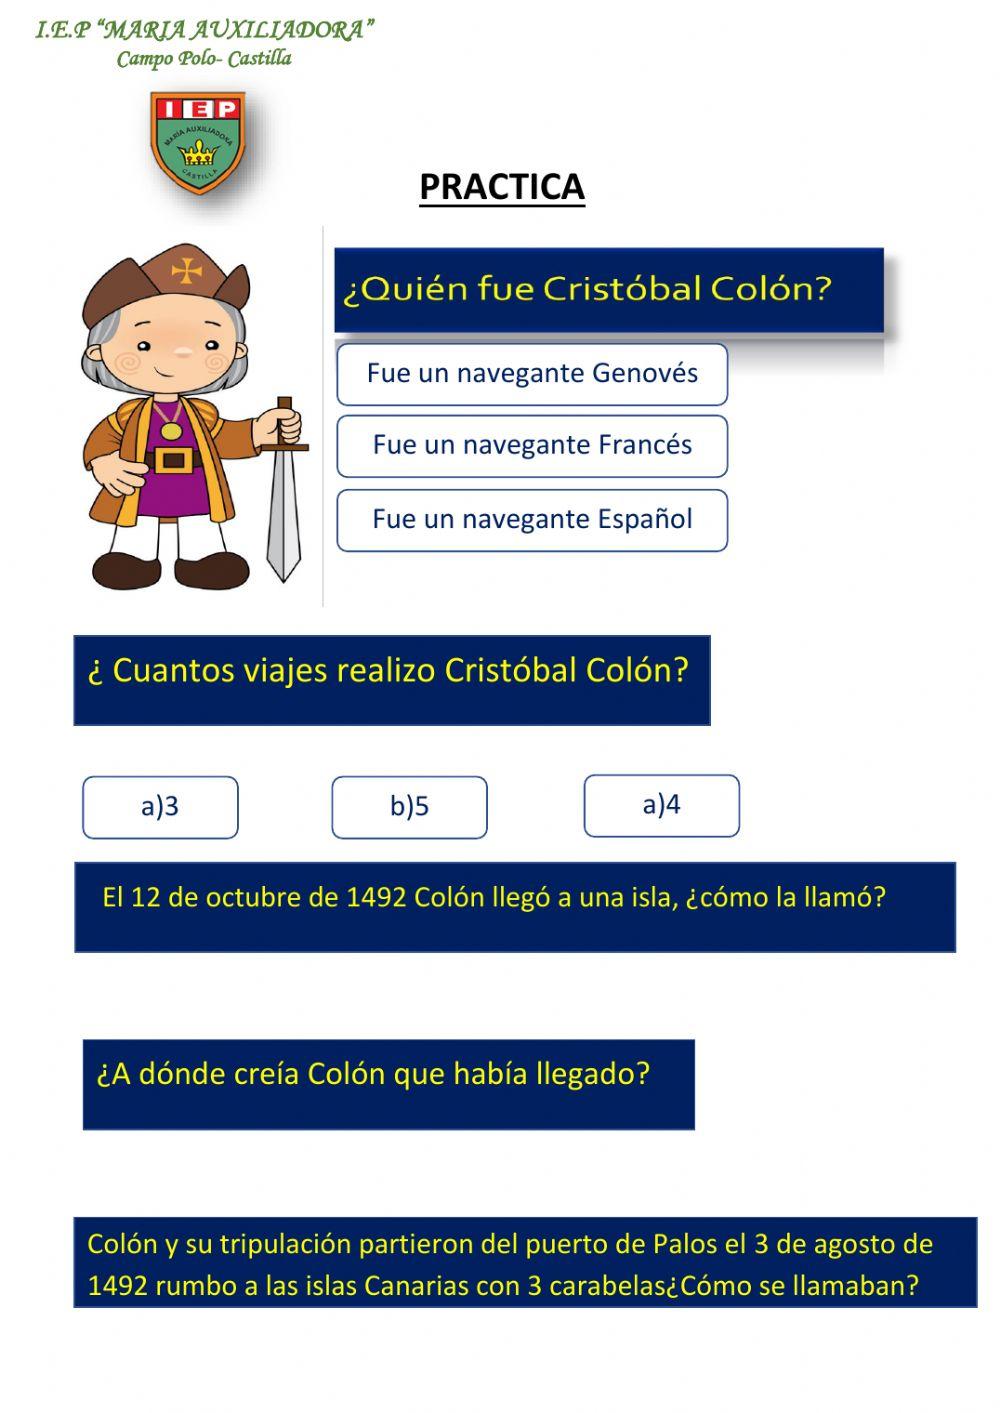 Cristóbal Colón y sus viajes